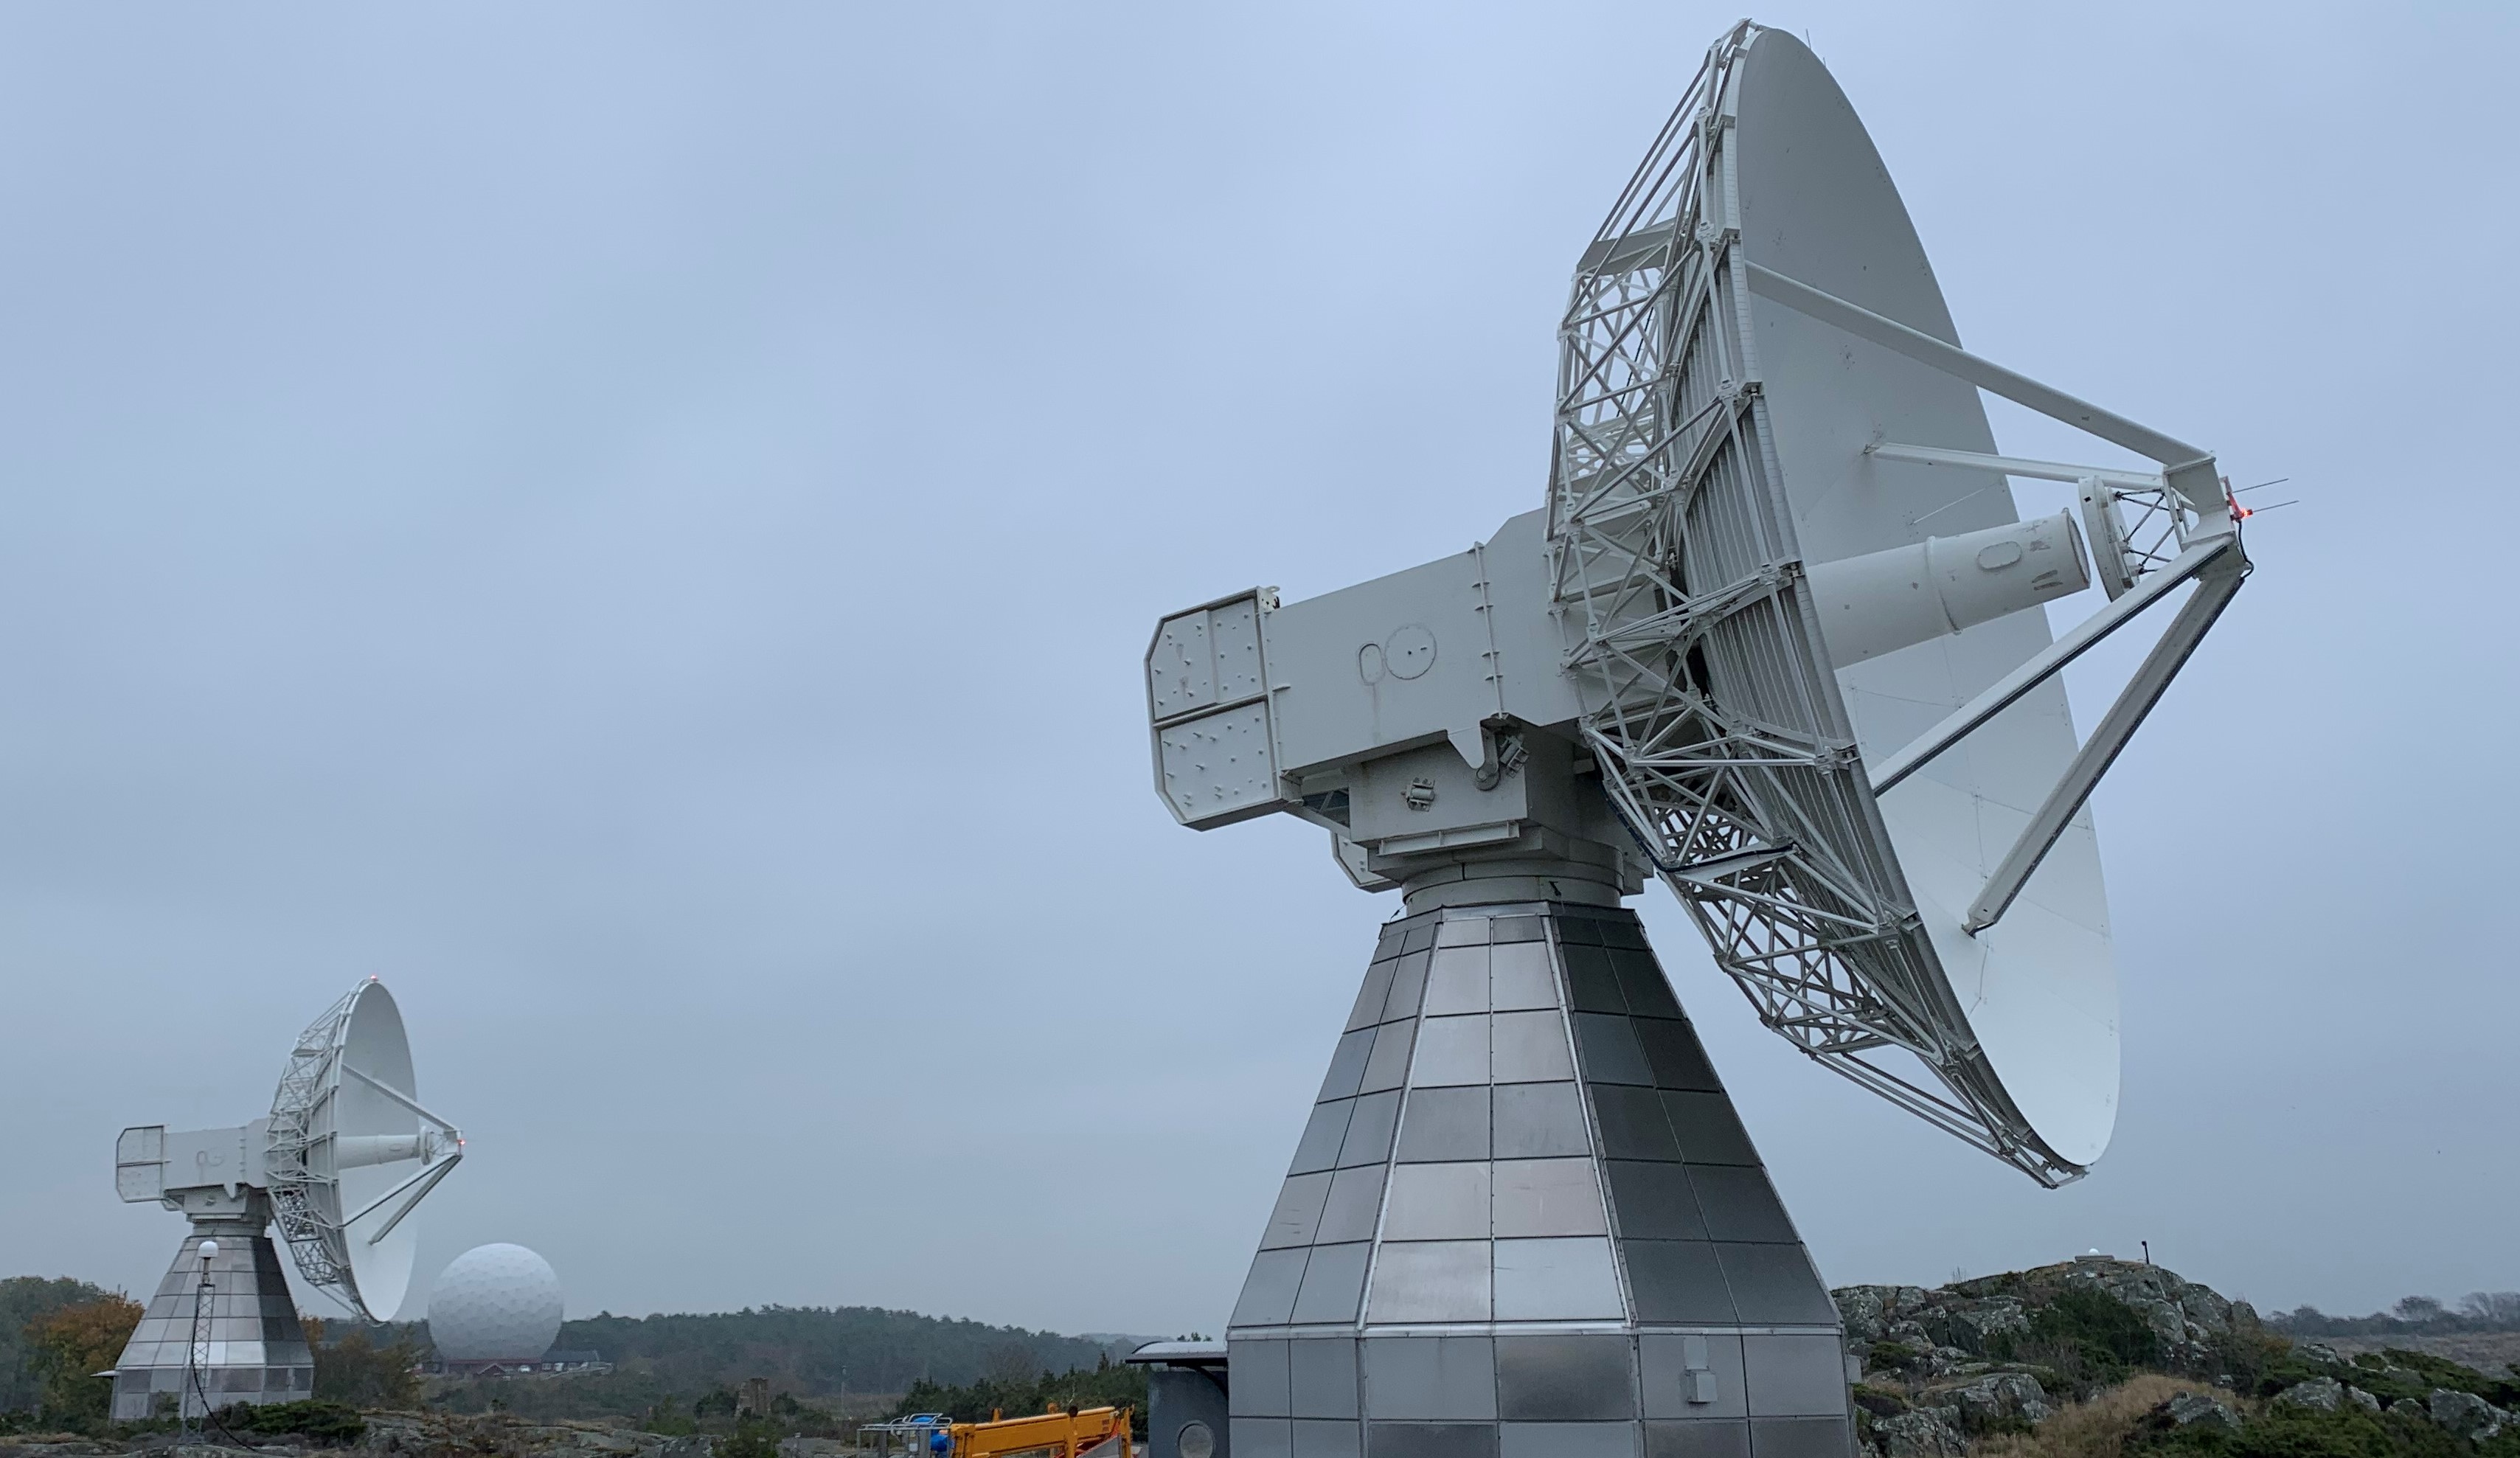 Foto av ett av radioteleskopen på Onsala. I bakgrunden syns ett annat radioteleskop, samt skyddet till ett av teleskopen. Teleskopskyddet ser ut som en jättestor golfboll.